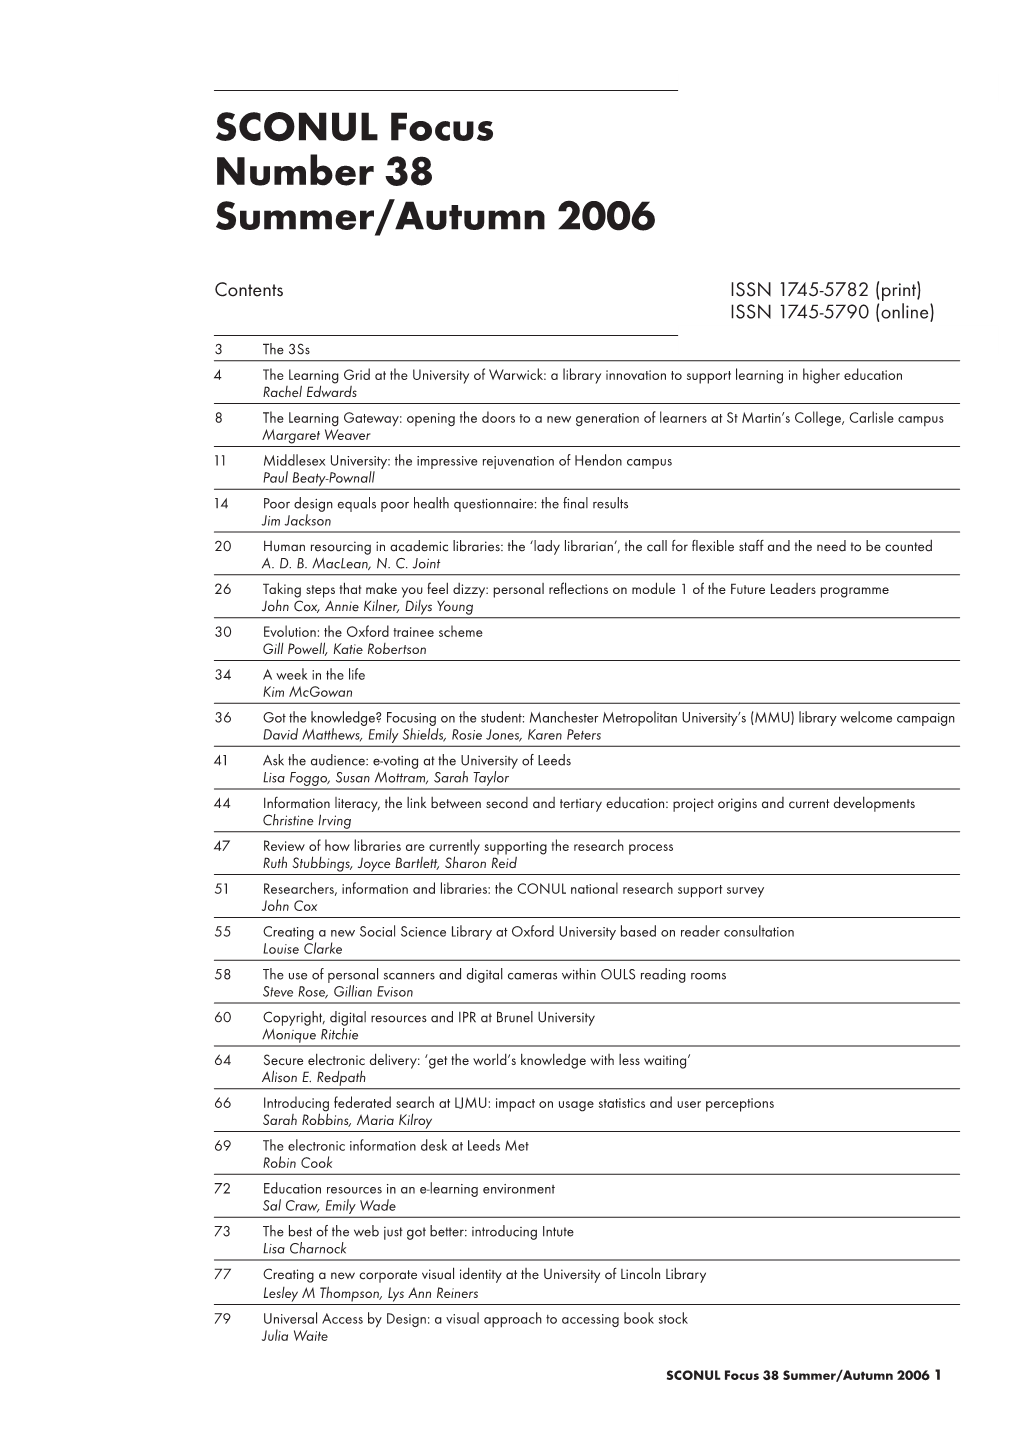 SCONUL Focus Number 38 Summer/Autumn 2006